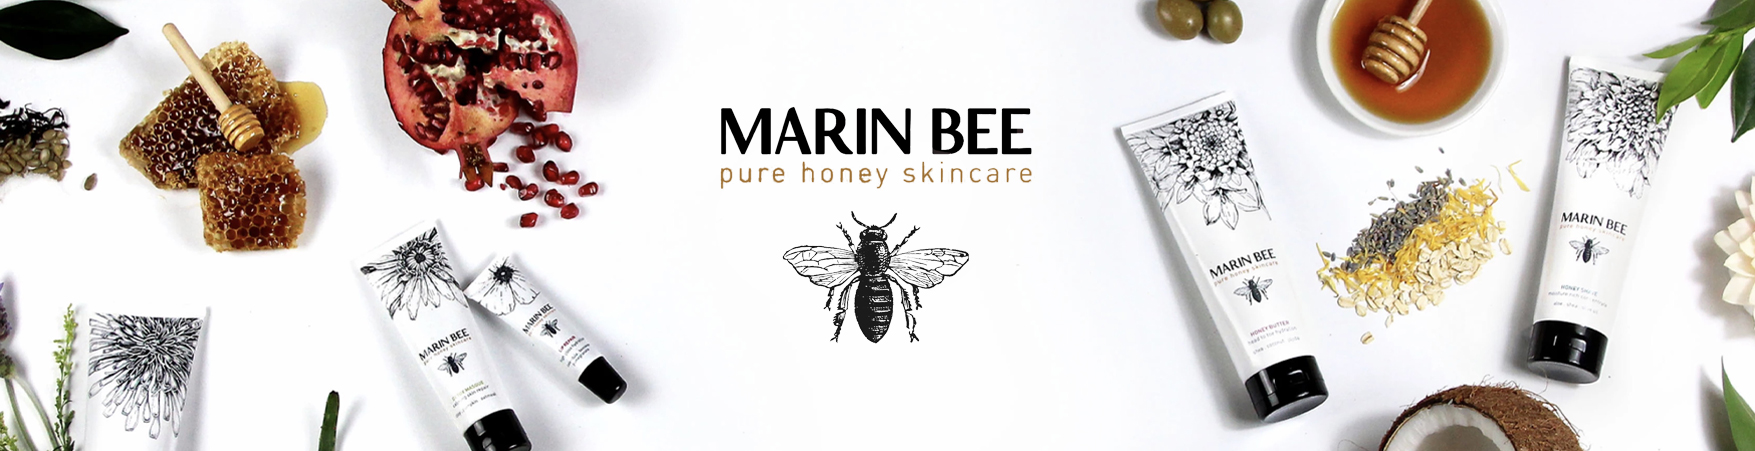 Marin Bee